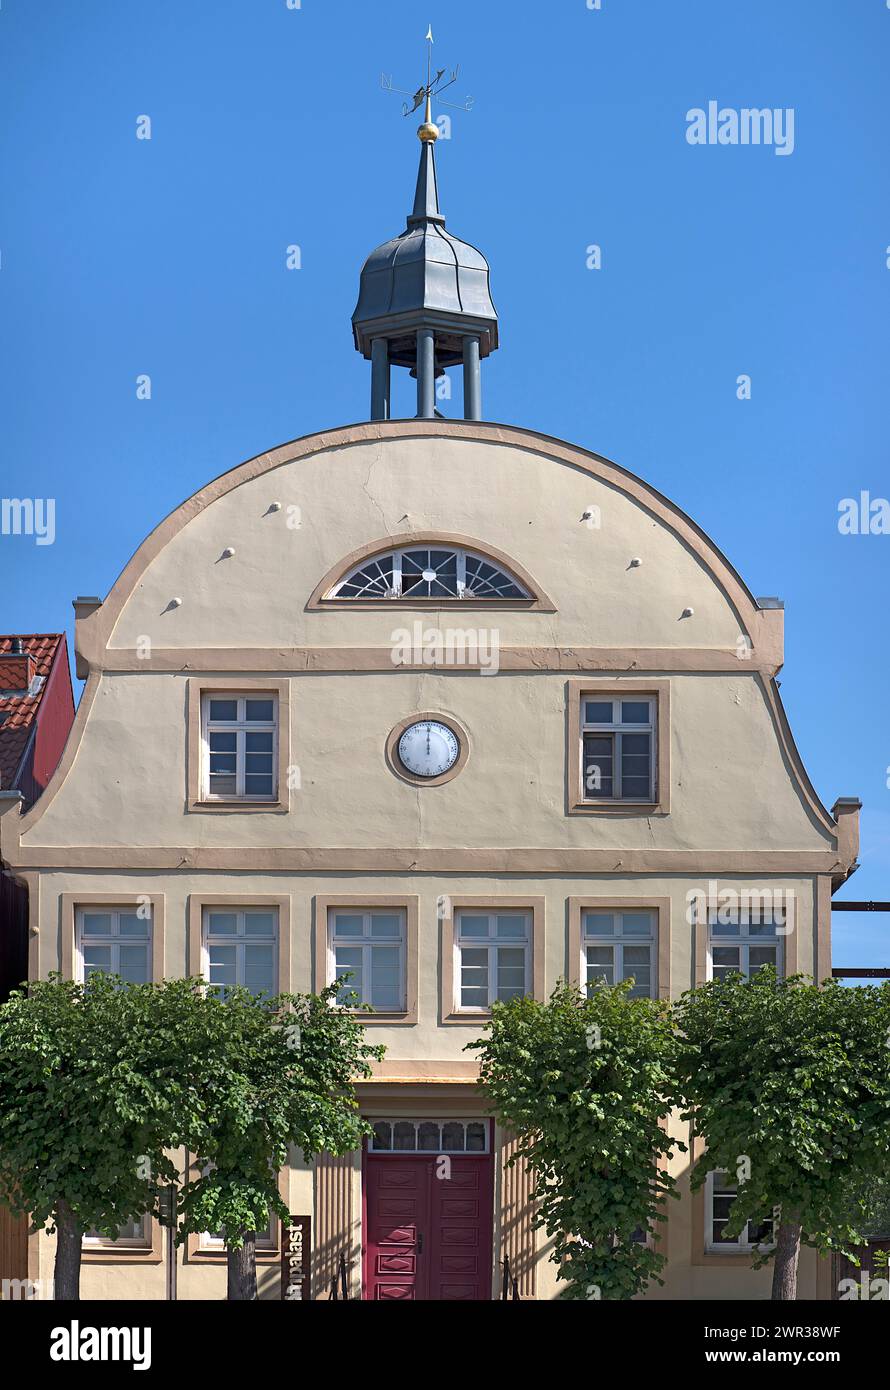 Historisches Haus erbaut um 1900, Rehna, Mecklenburg-Vorpommern, Deutschland Stockfoto